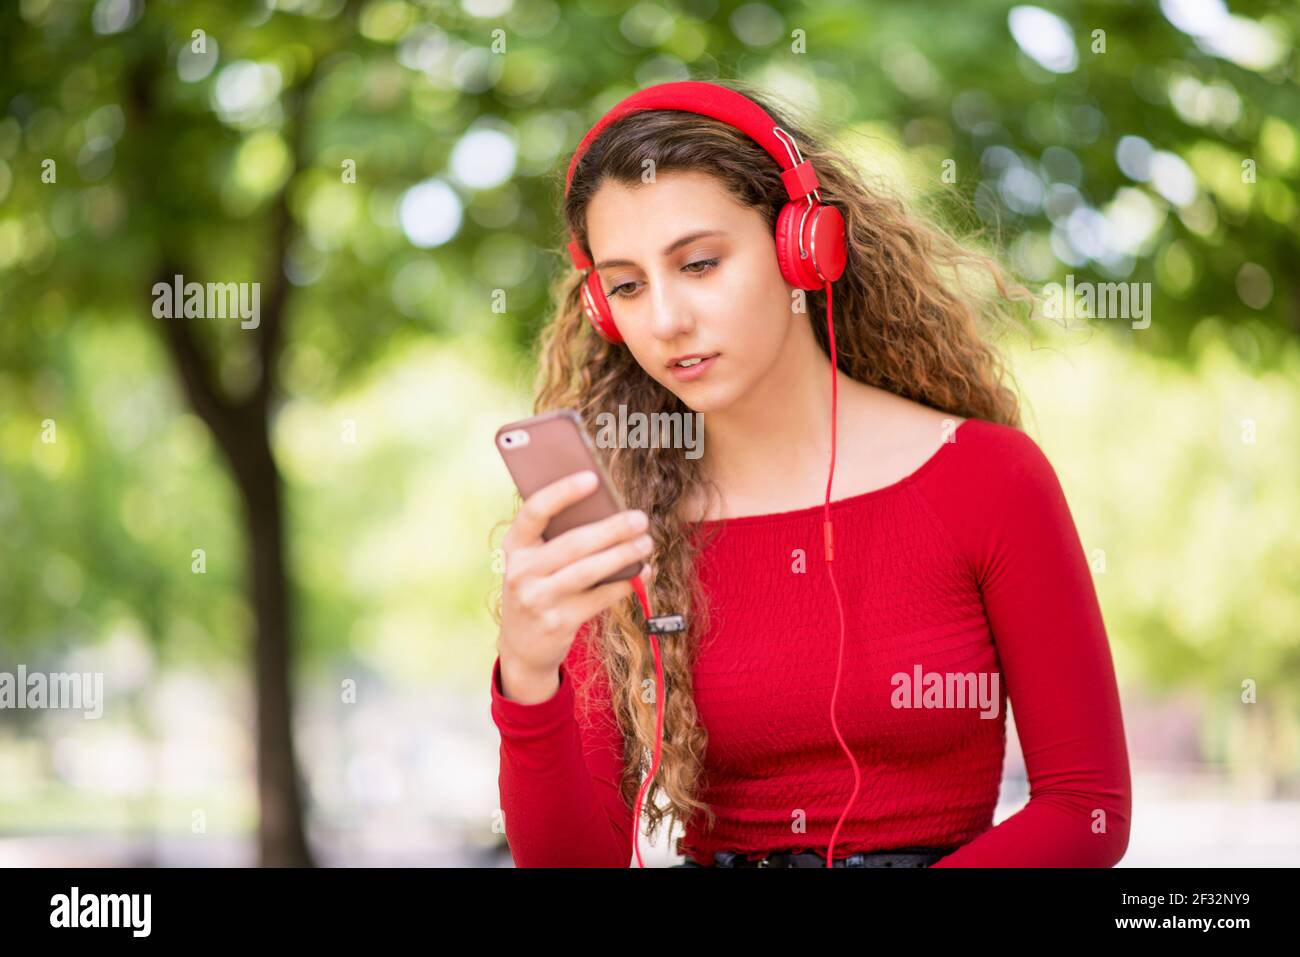 Rot gekleideter Teenager, der in einem Park Musik vom Telefon hört Stockfoto